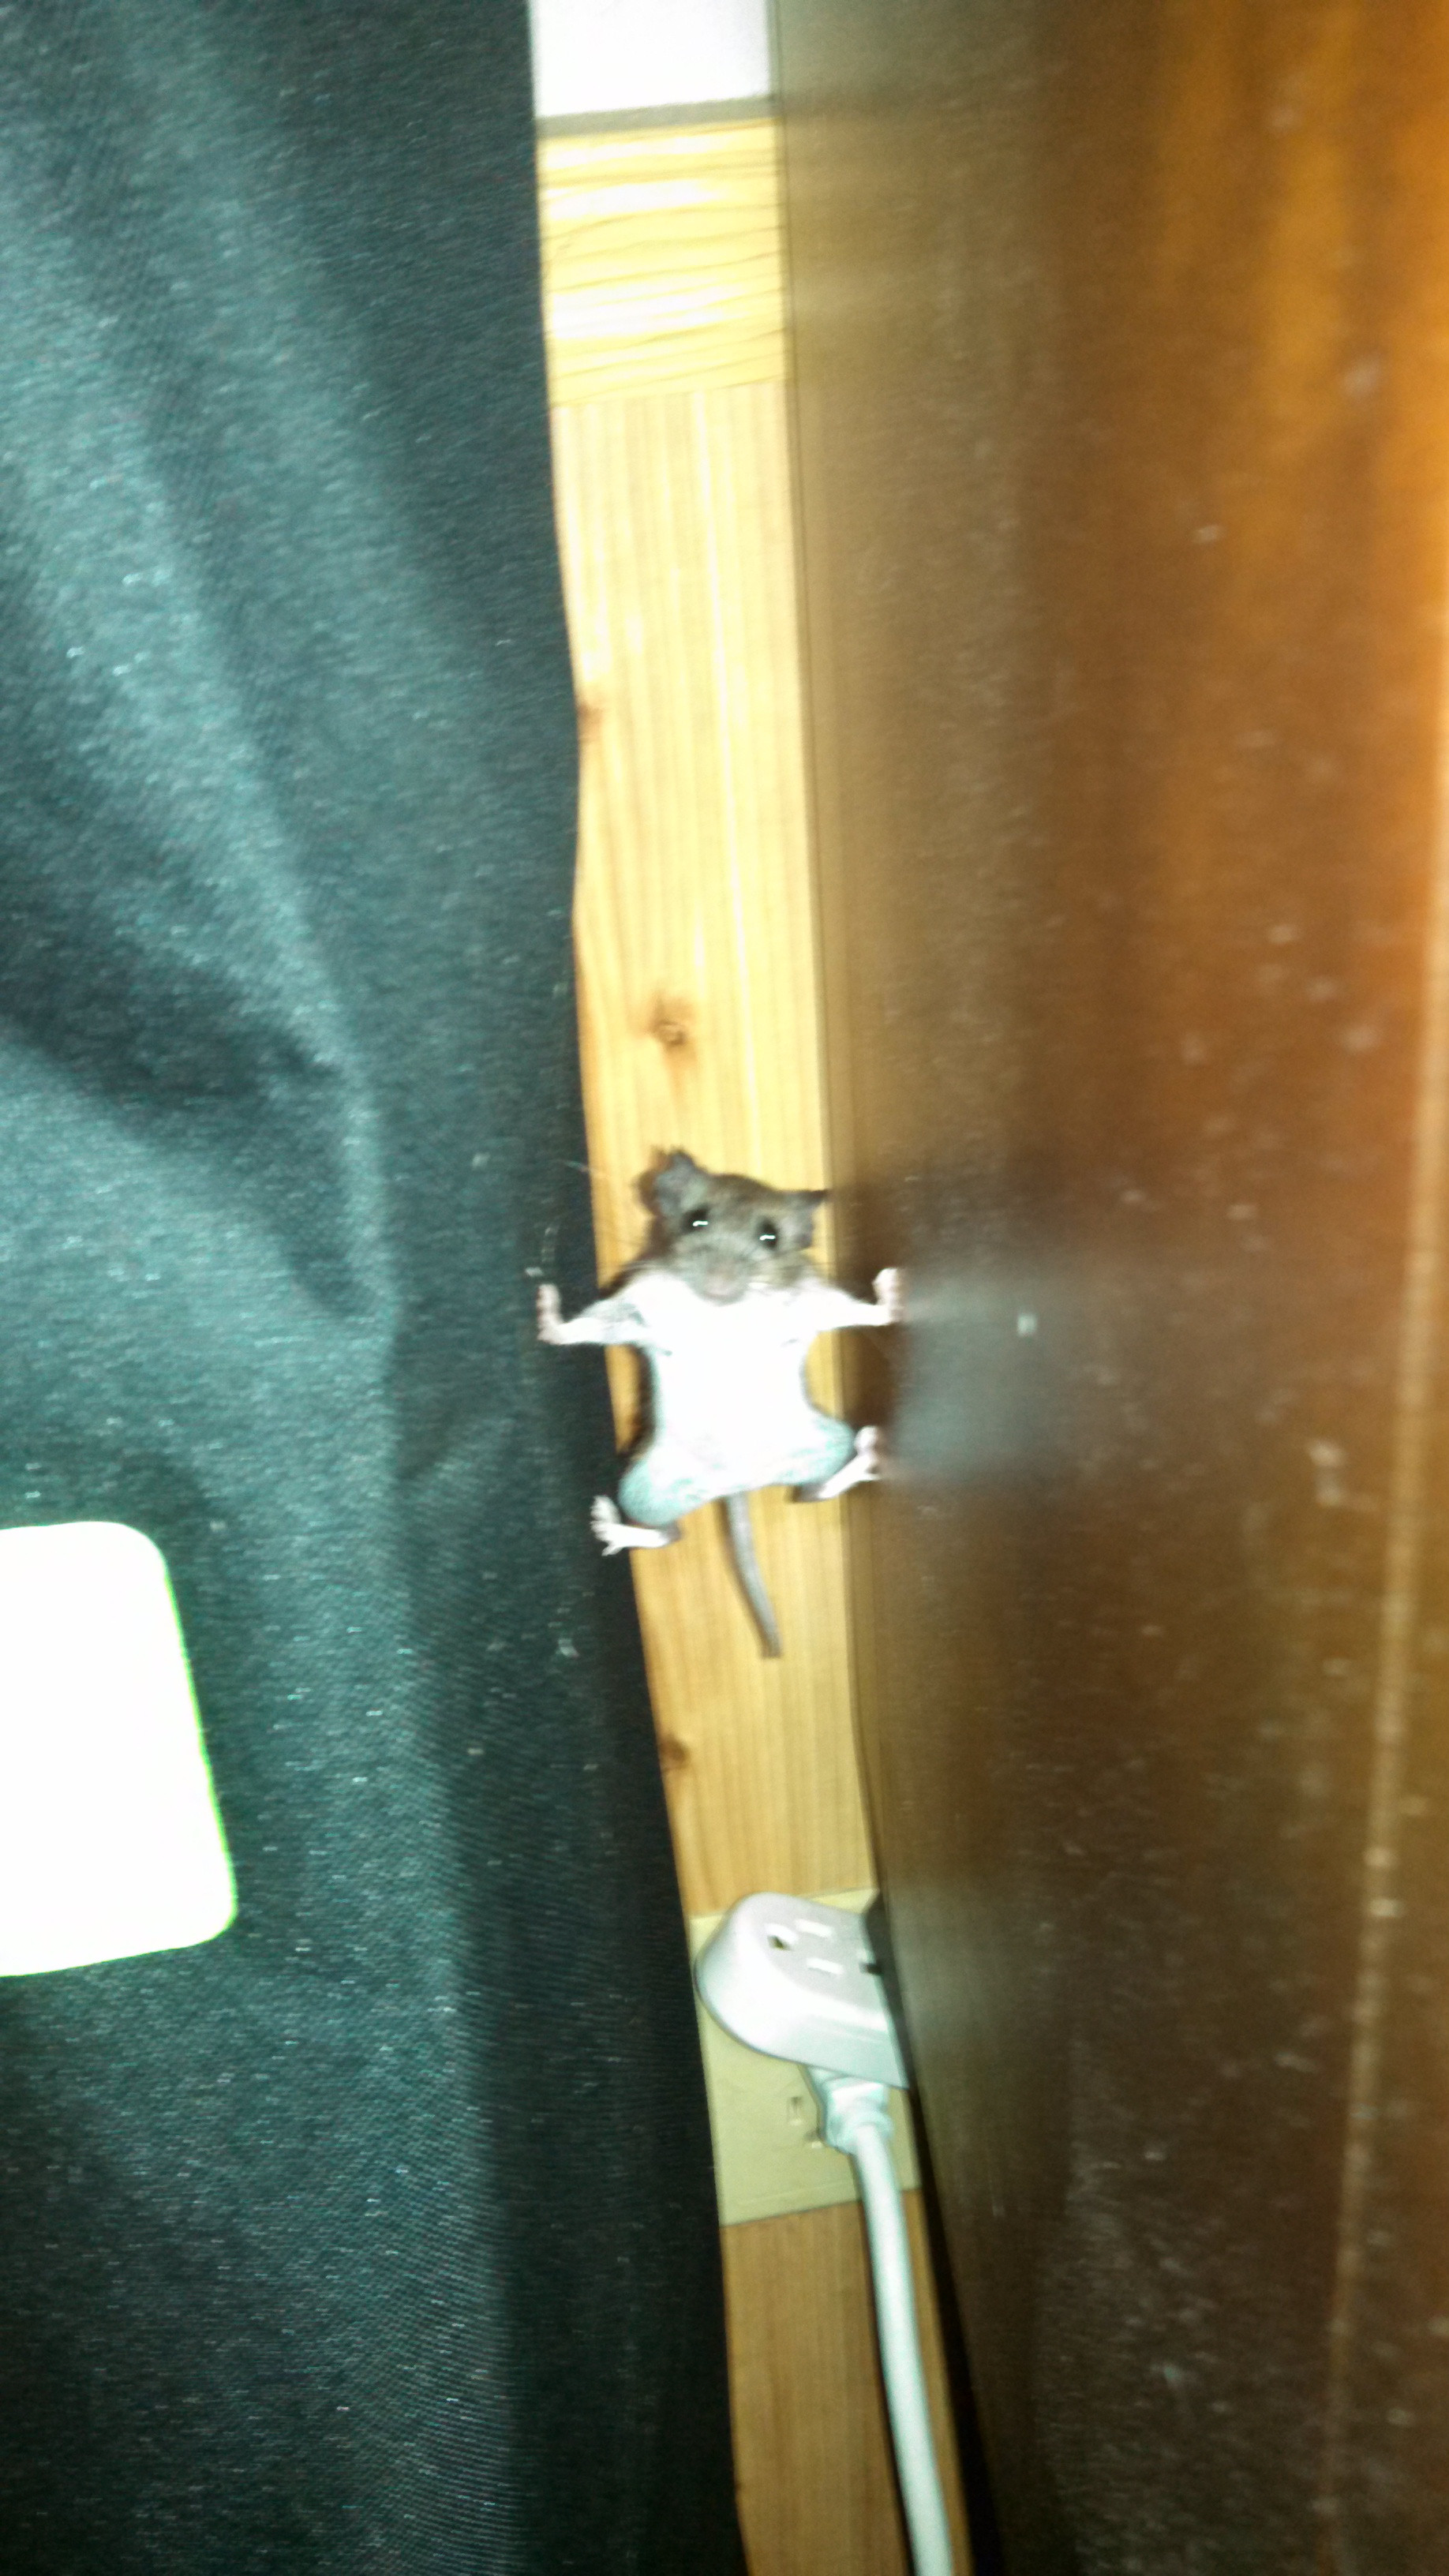 Un souris en mode Mission Impossible